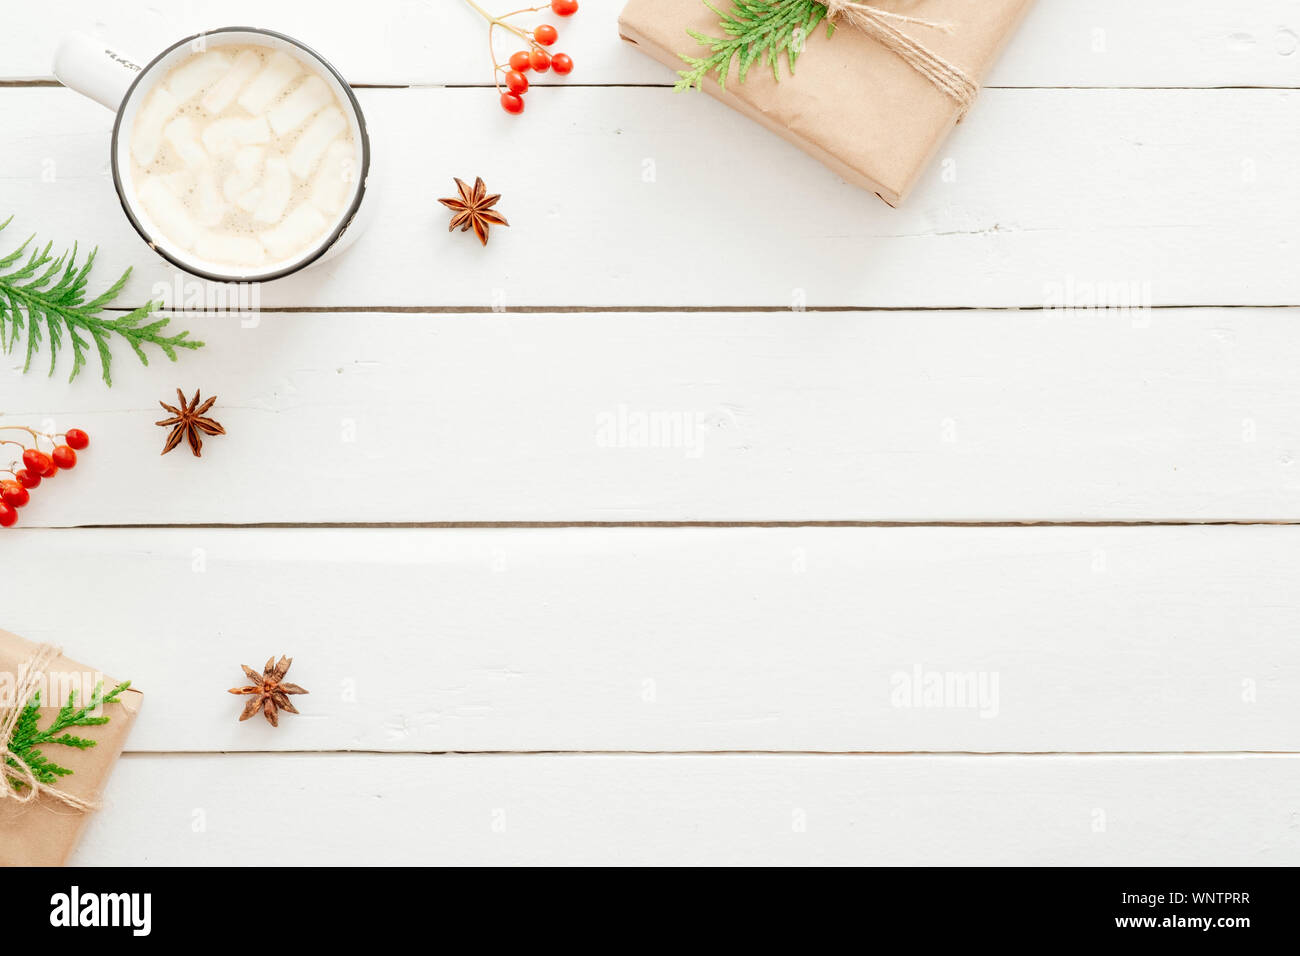 Composizione di natale. Lay piatto tazza di cioccolata calda con marshmallow, Abete rami, bacca rossa, presenta sul legno tavolo bianco. Natale, inverno Foto Stock